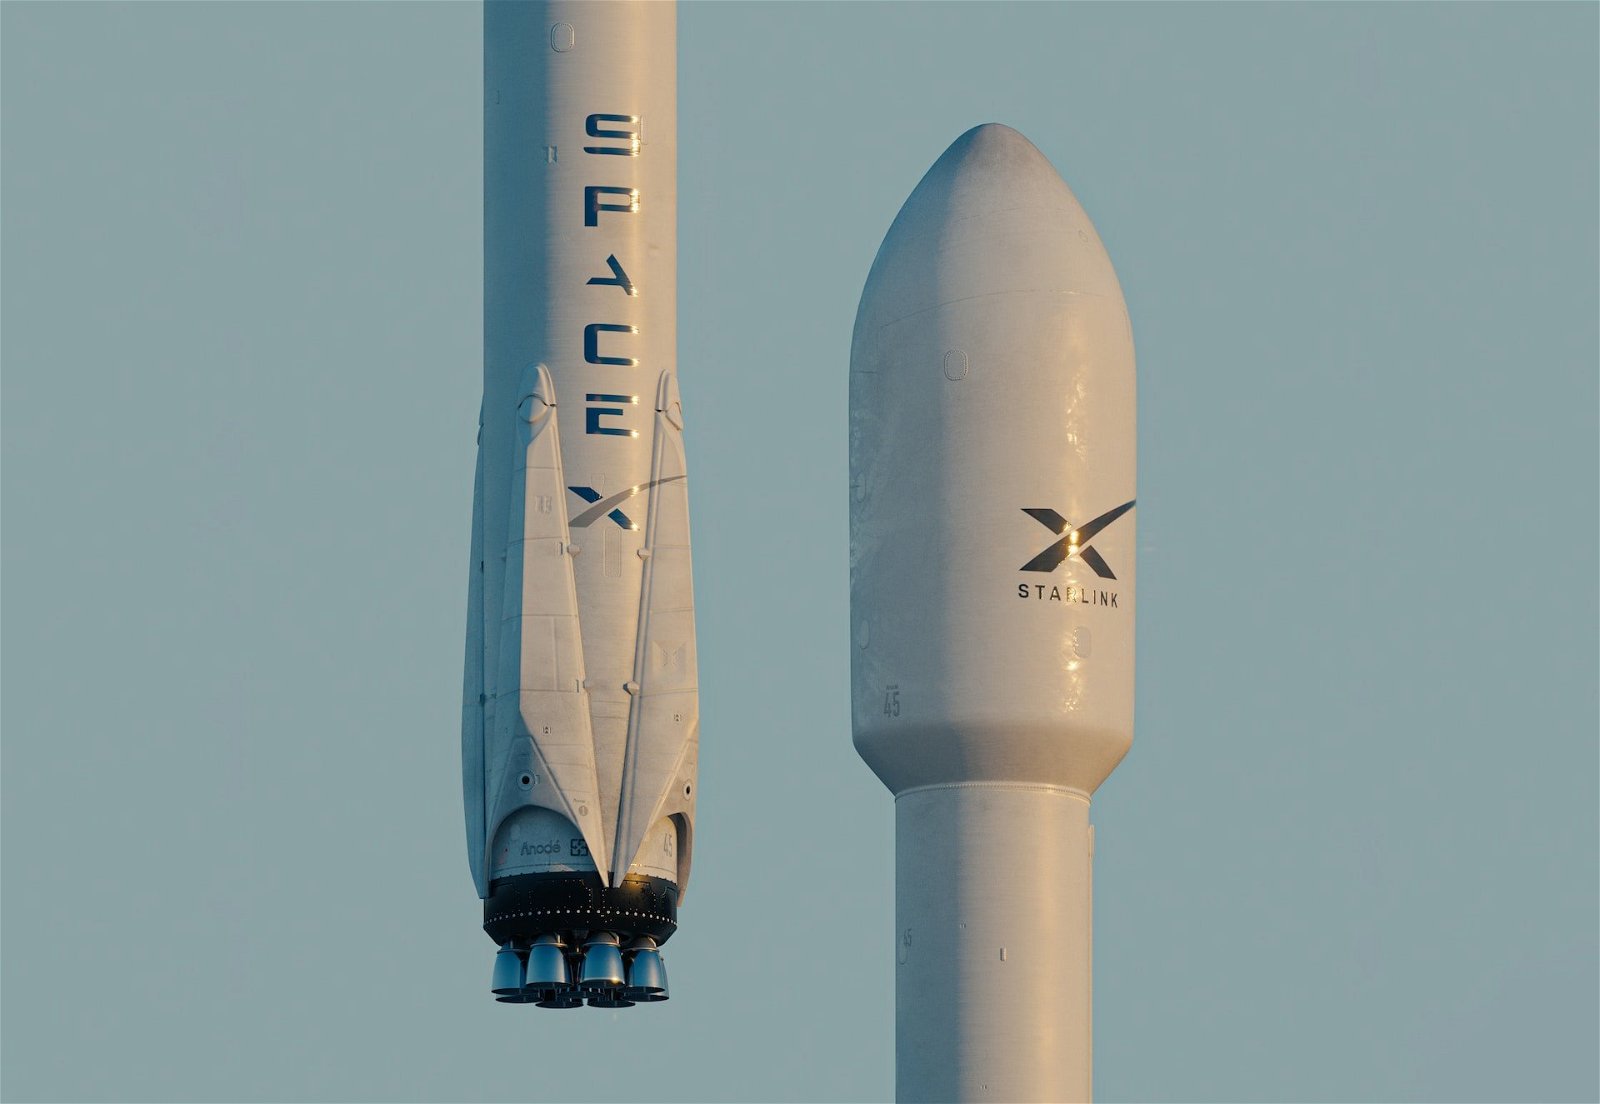 Immagine di SpaceX ha un problema di sicurezza sul lavoro, incidenti sopra la media